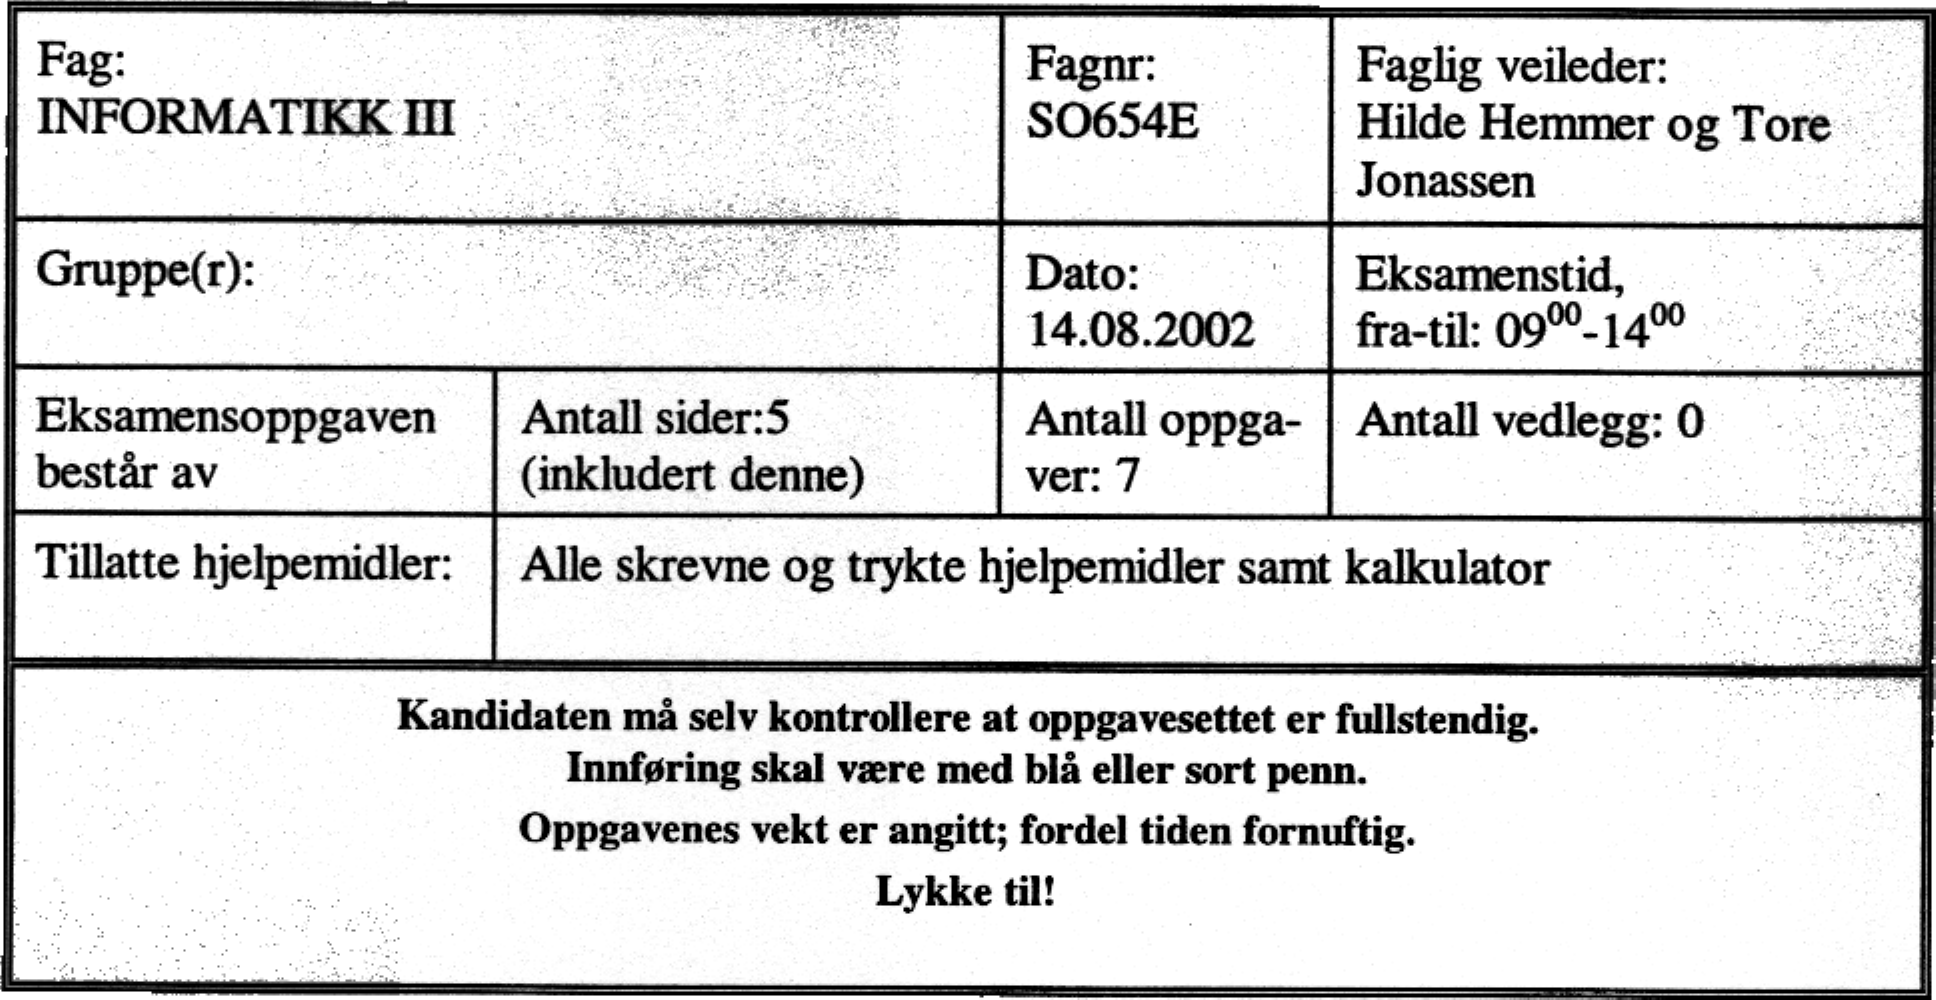 A vdeling for ingeniørutdanning Fag: INFORMATIKK m Gruppe(r): Fagnr: SO654E Dato: 14.08.